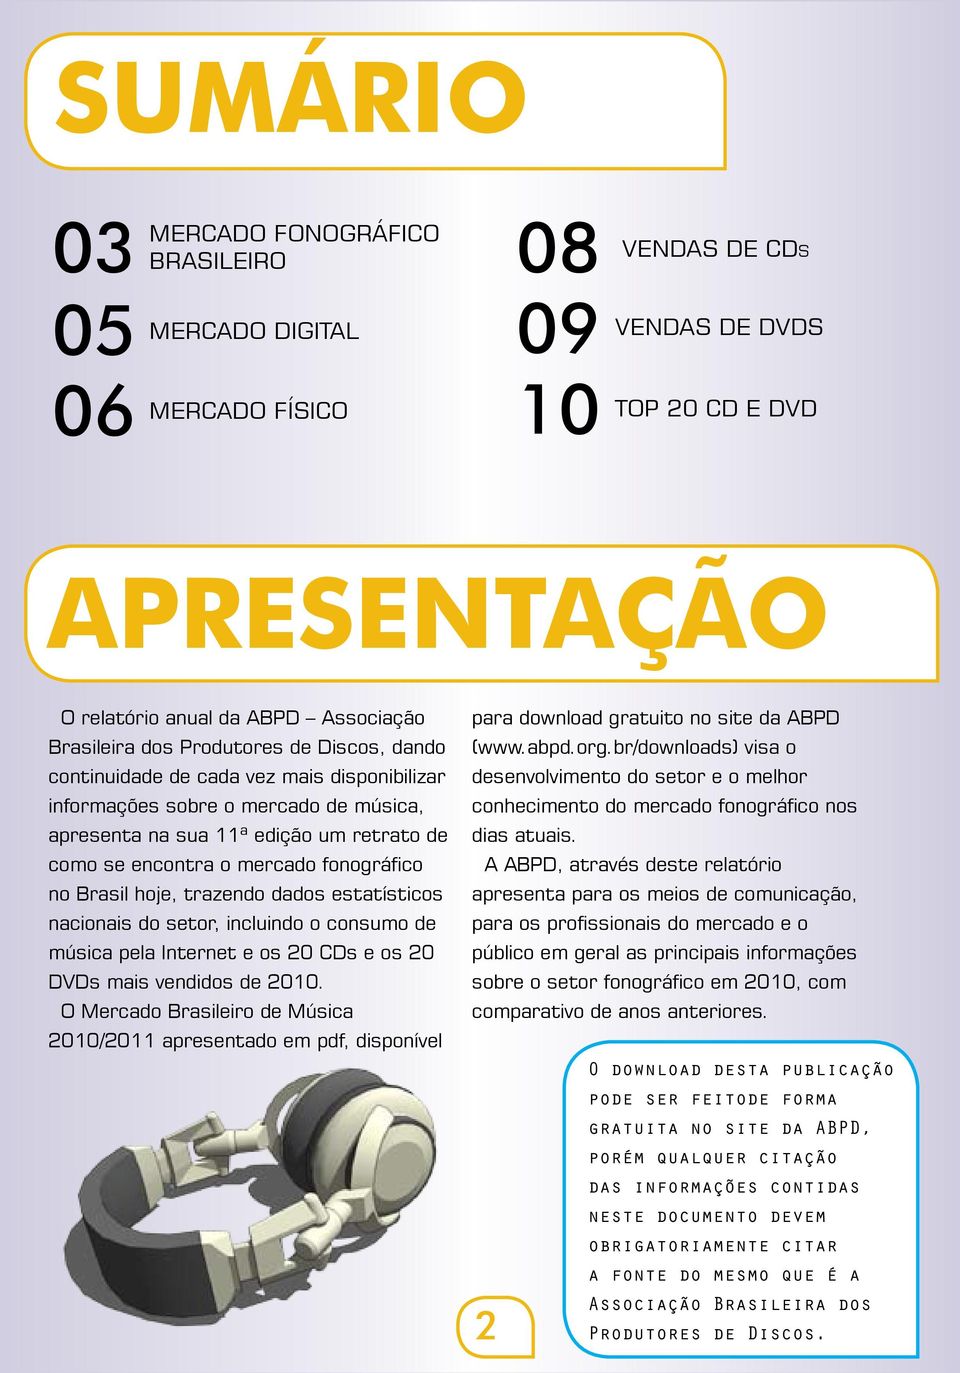 Brasil hoje, trazendo dados estatísticos nacionais do setor, incluindo o consumo de música pela Internet e os 20 CDs e os 20 DVDs mais vendidos de.